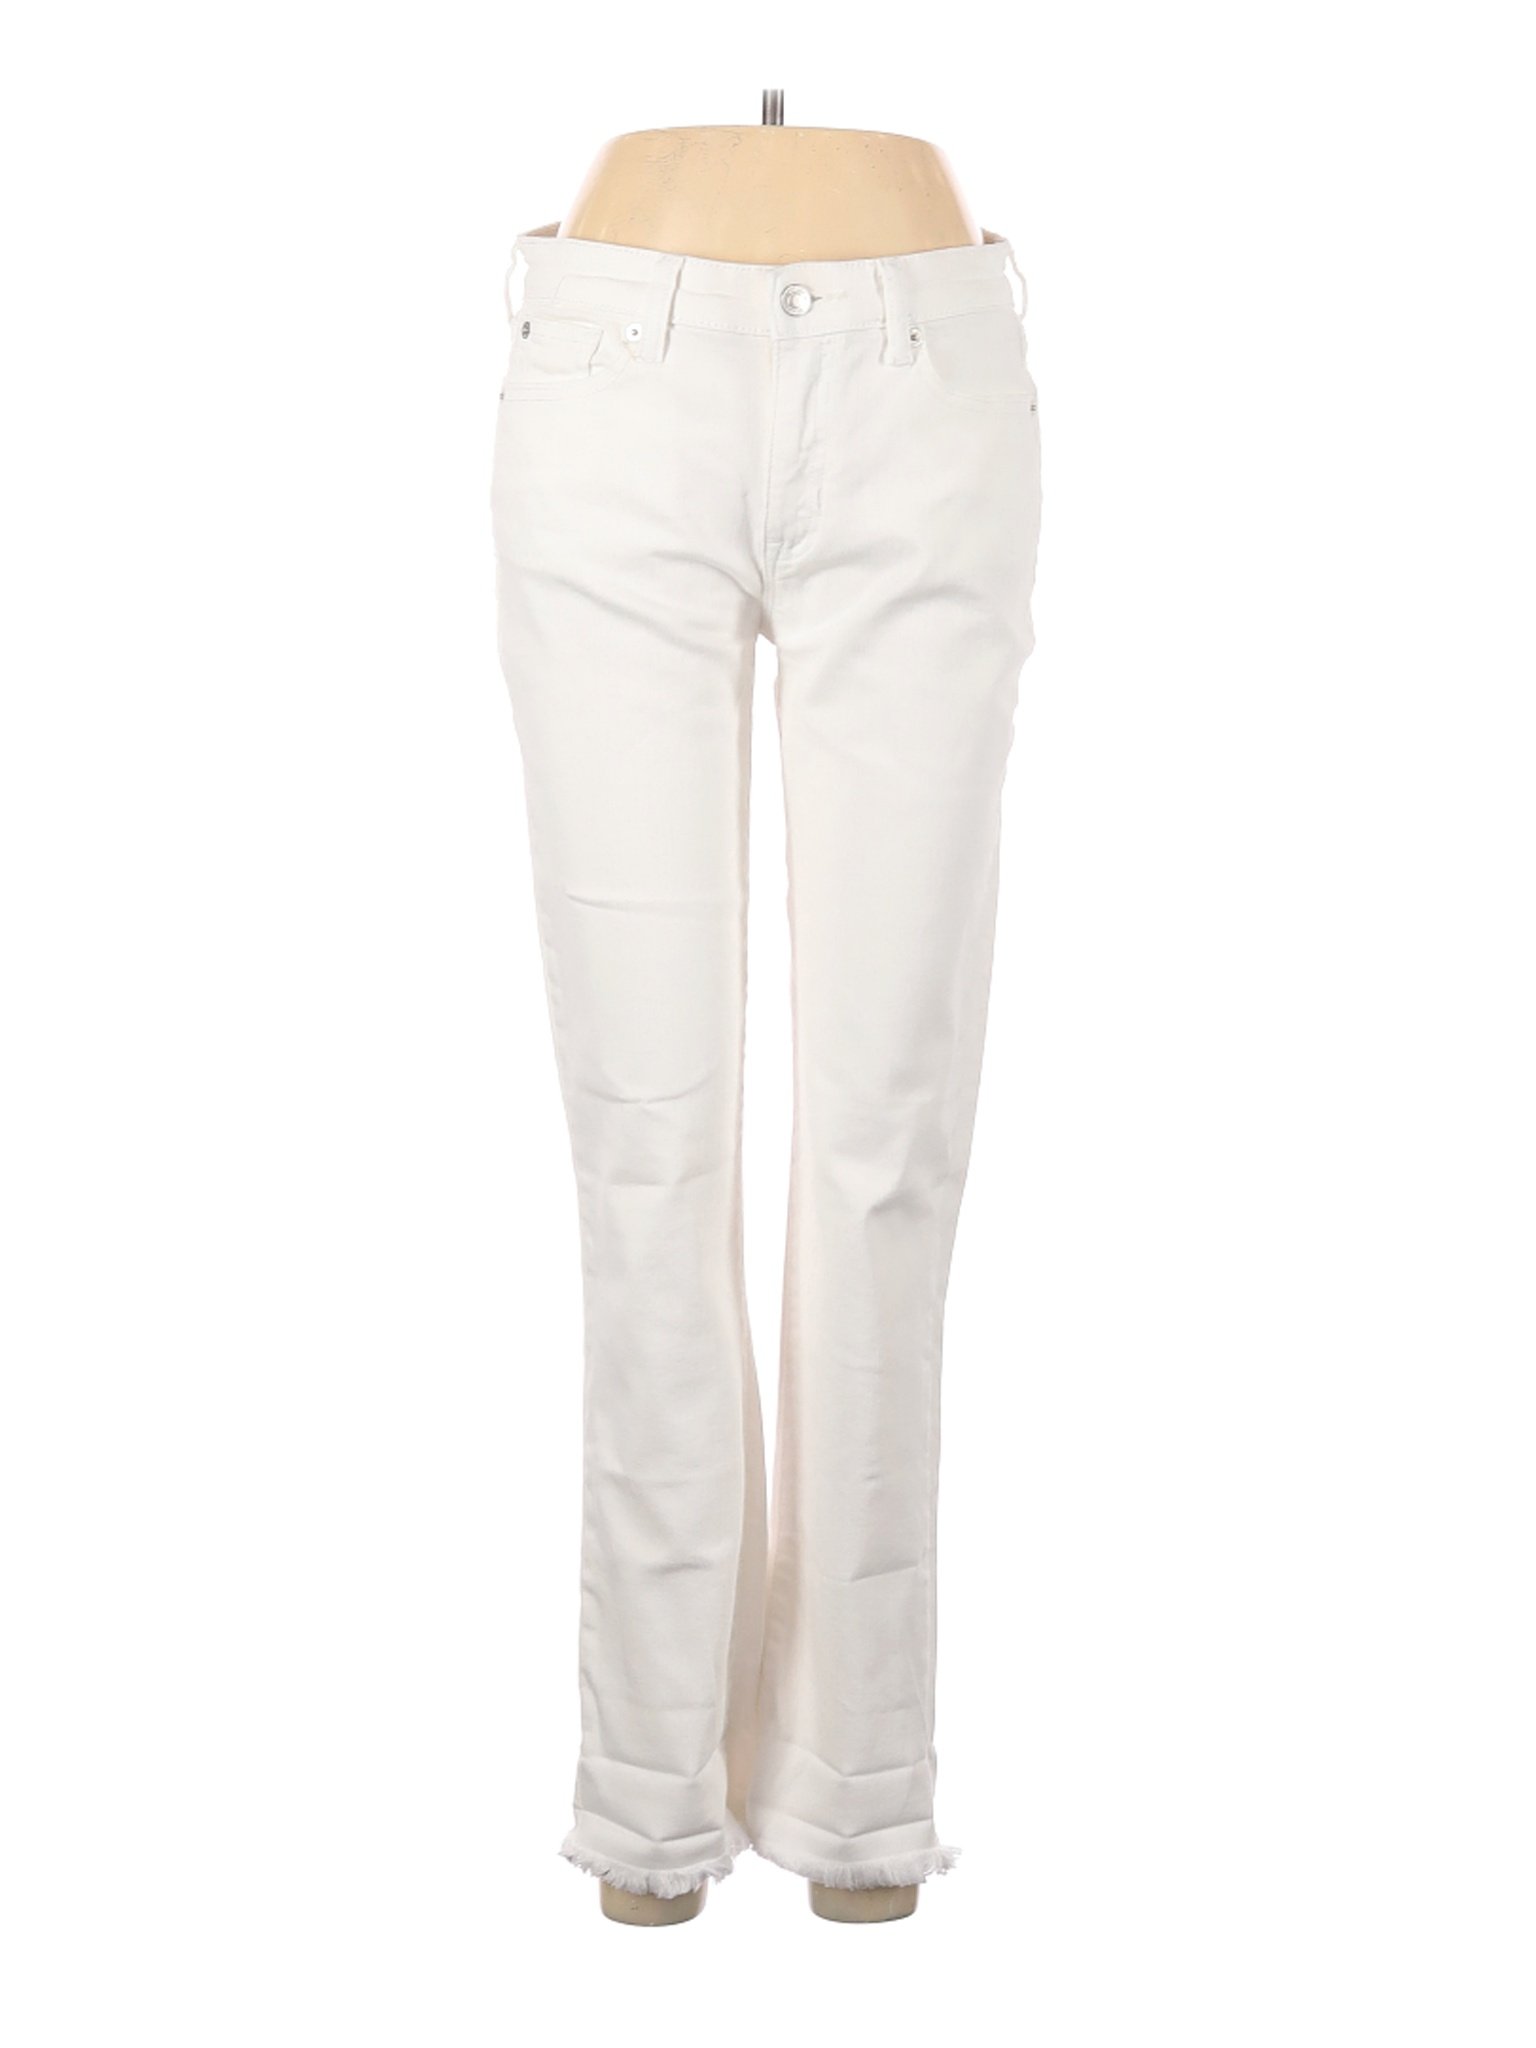 Gap Women White Jeans 27W | eBay